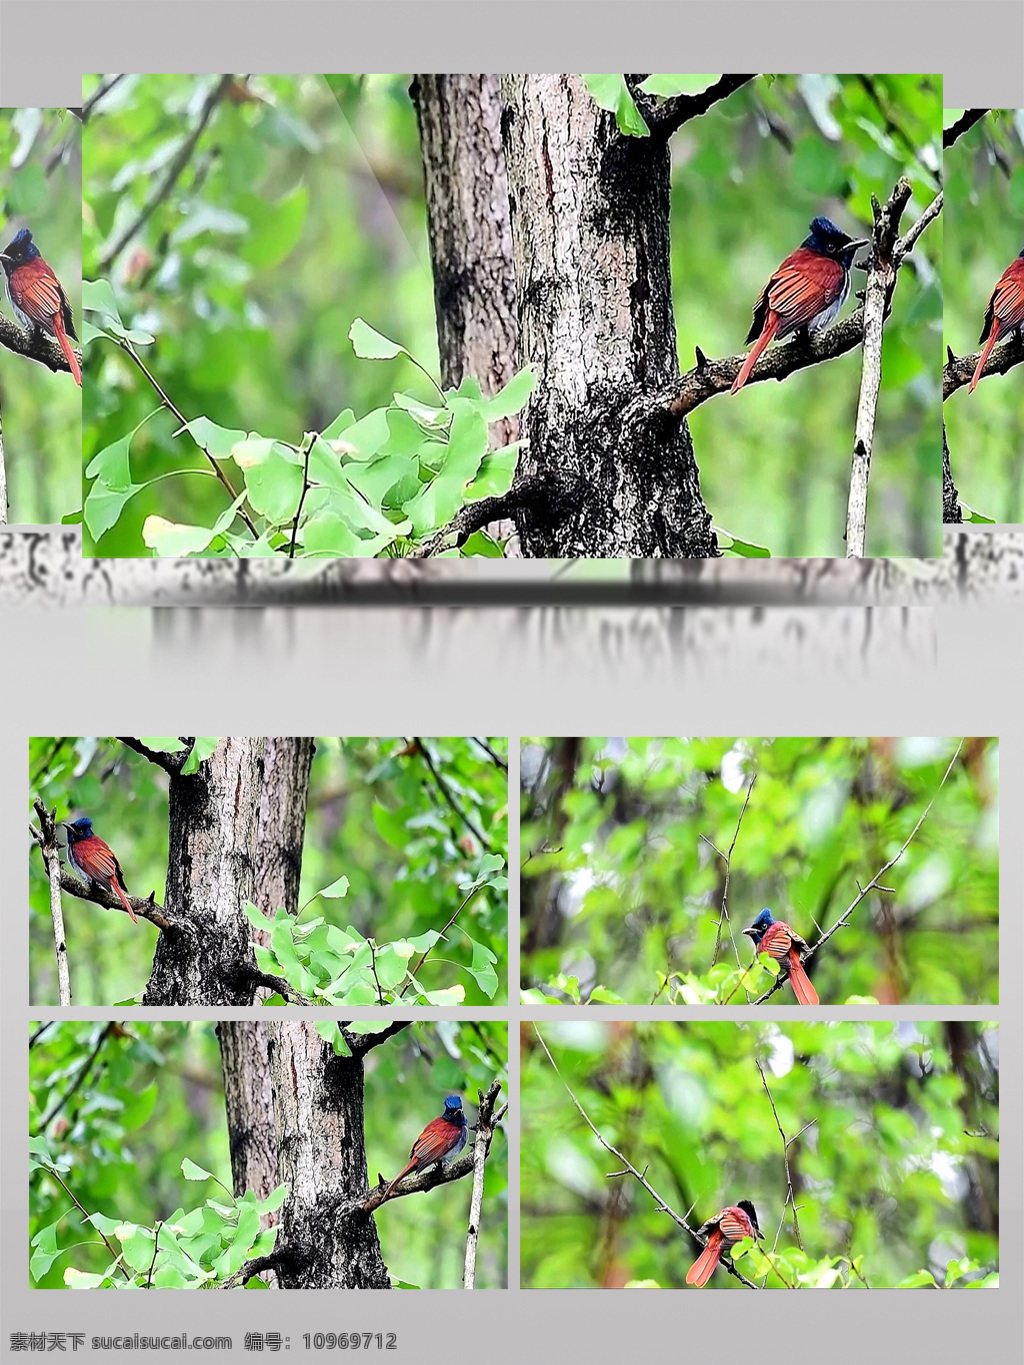 漂亮 红 寿 带 短 尾巴 母 鸟 春天 绿色 森林 树叶 超清 春色 动物 鸟儿 小鸟 自然 美丽 实拍 视频 树枝